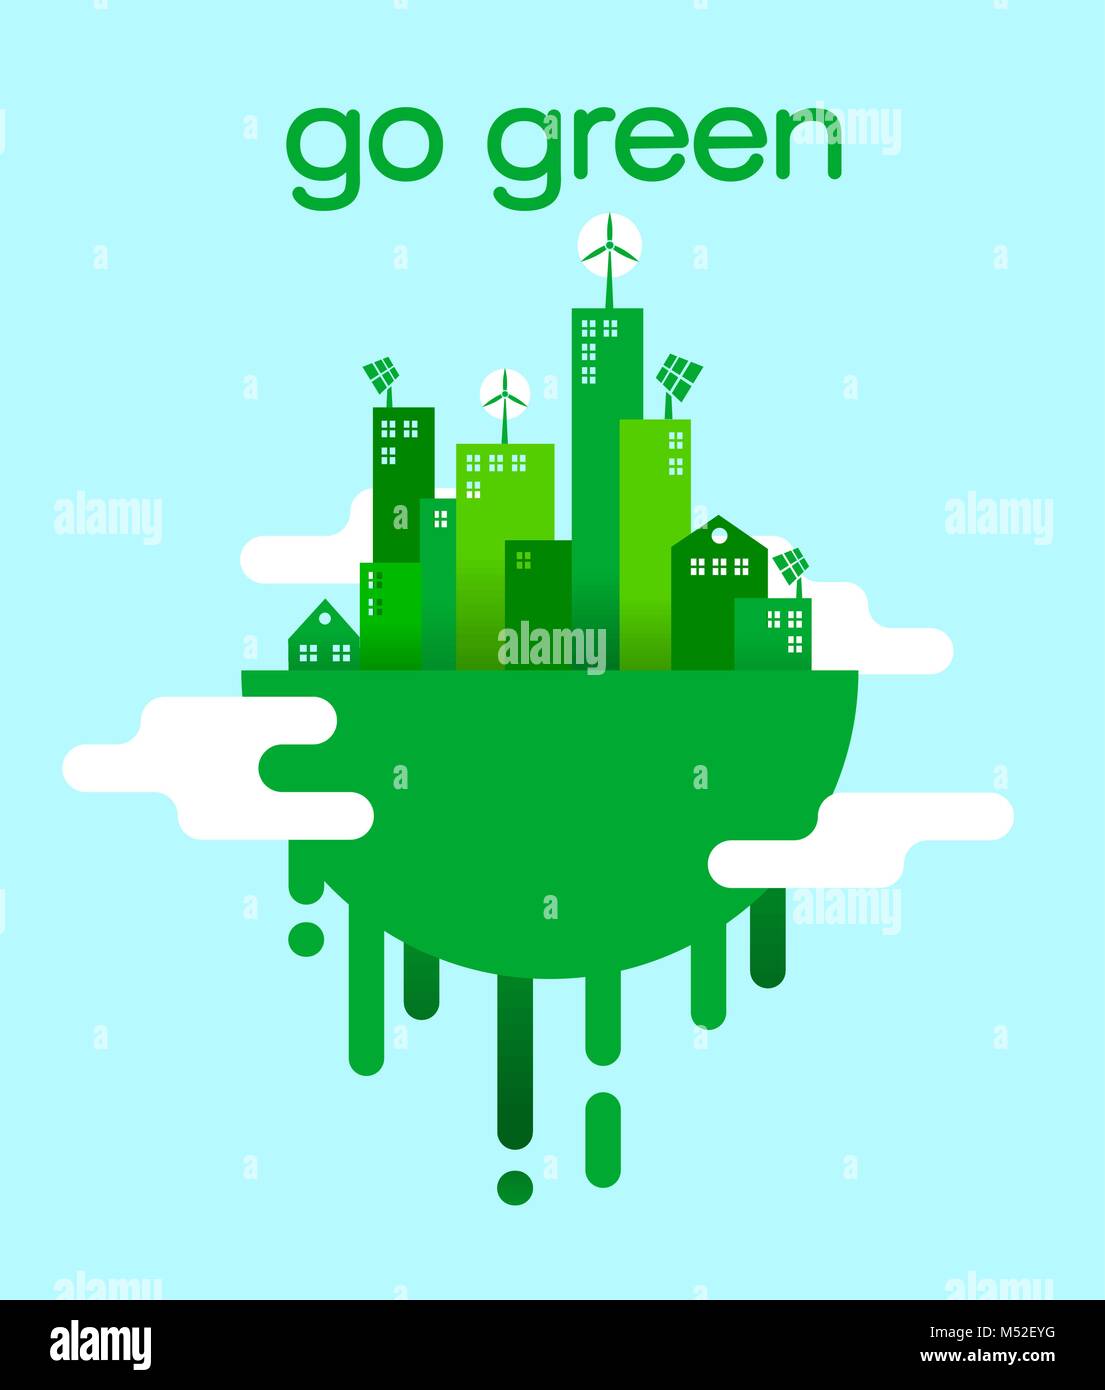 Grüne, flache Konzept Abbildung mit eco-freundliche Stadt für Umweltschutz und nachhaltigen Lebensstil. EPS 10 Vektor. Stock Vektor